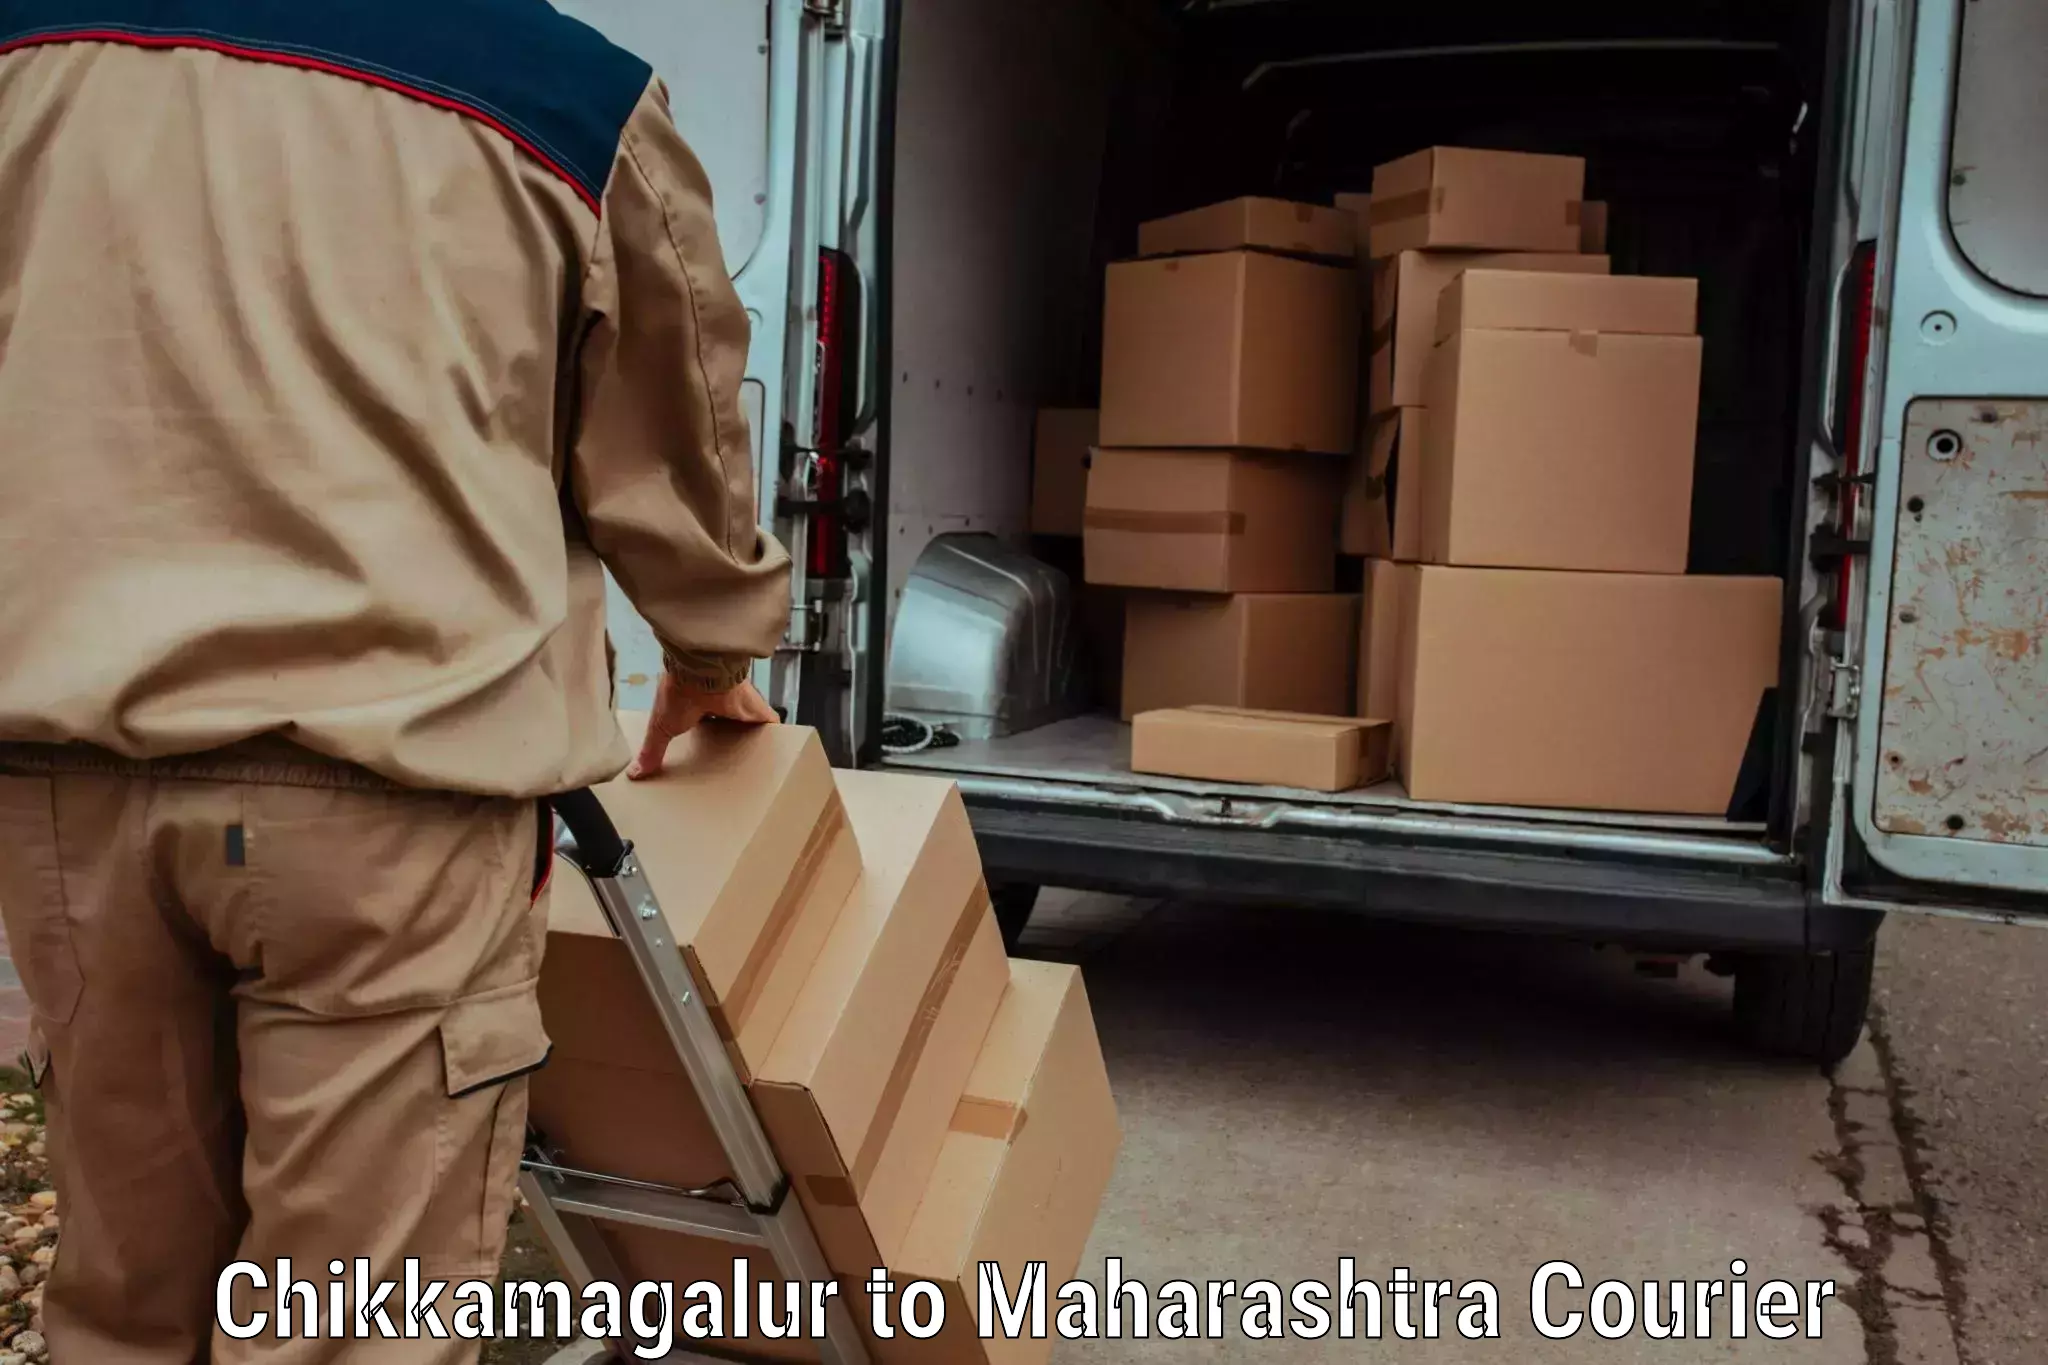 Reliable parcel services Chikkamagalur to Ramtek